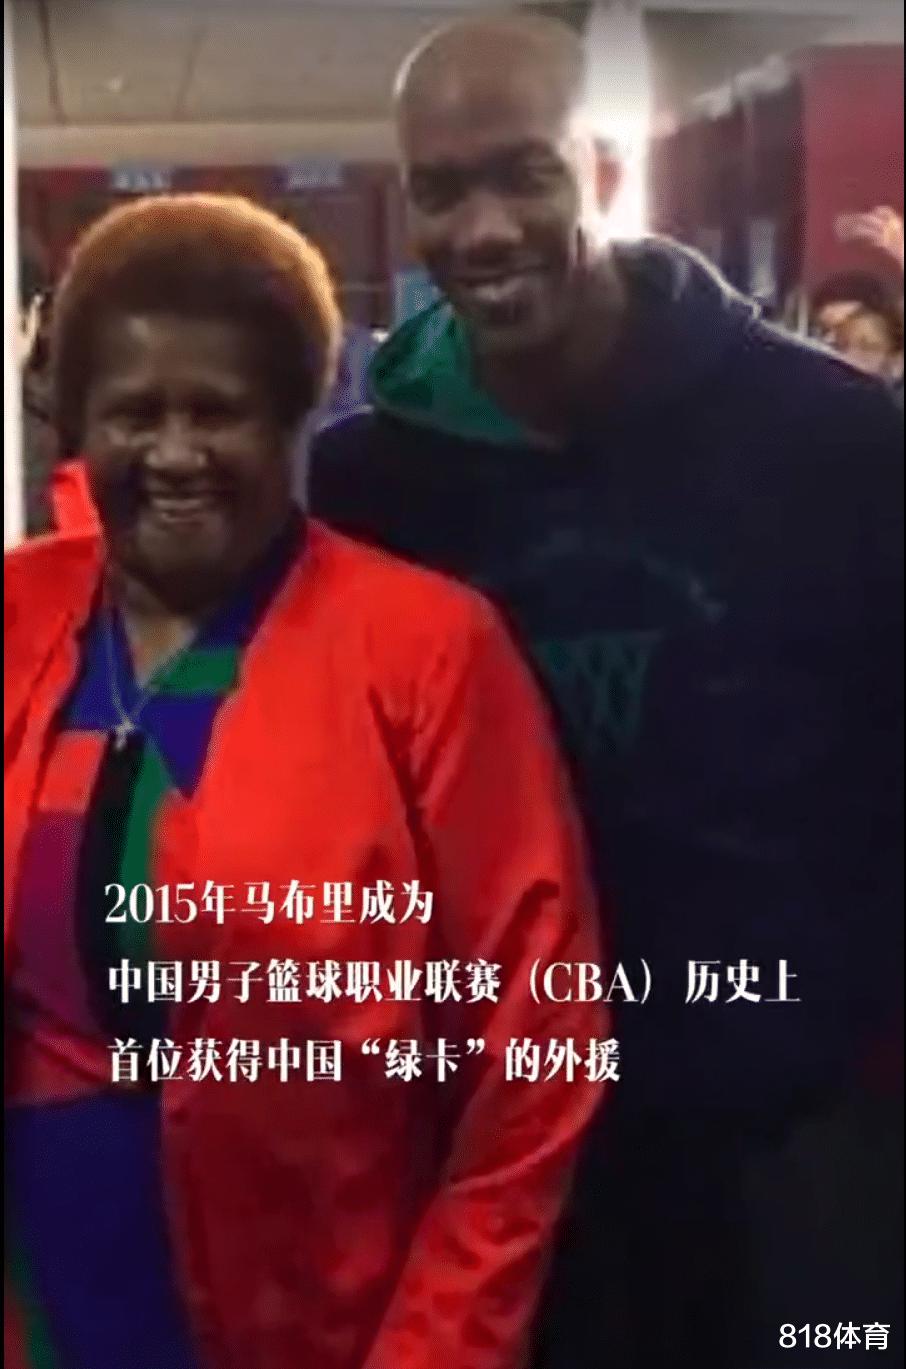 北京爷们! 马布里: 我15年拿到中国绿卡 妈妈到处跟朋友炫耀我随时来中国(8)